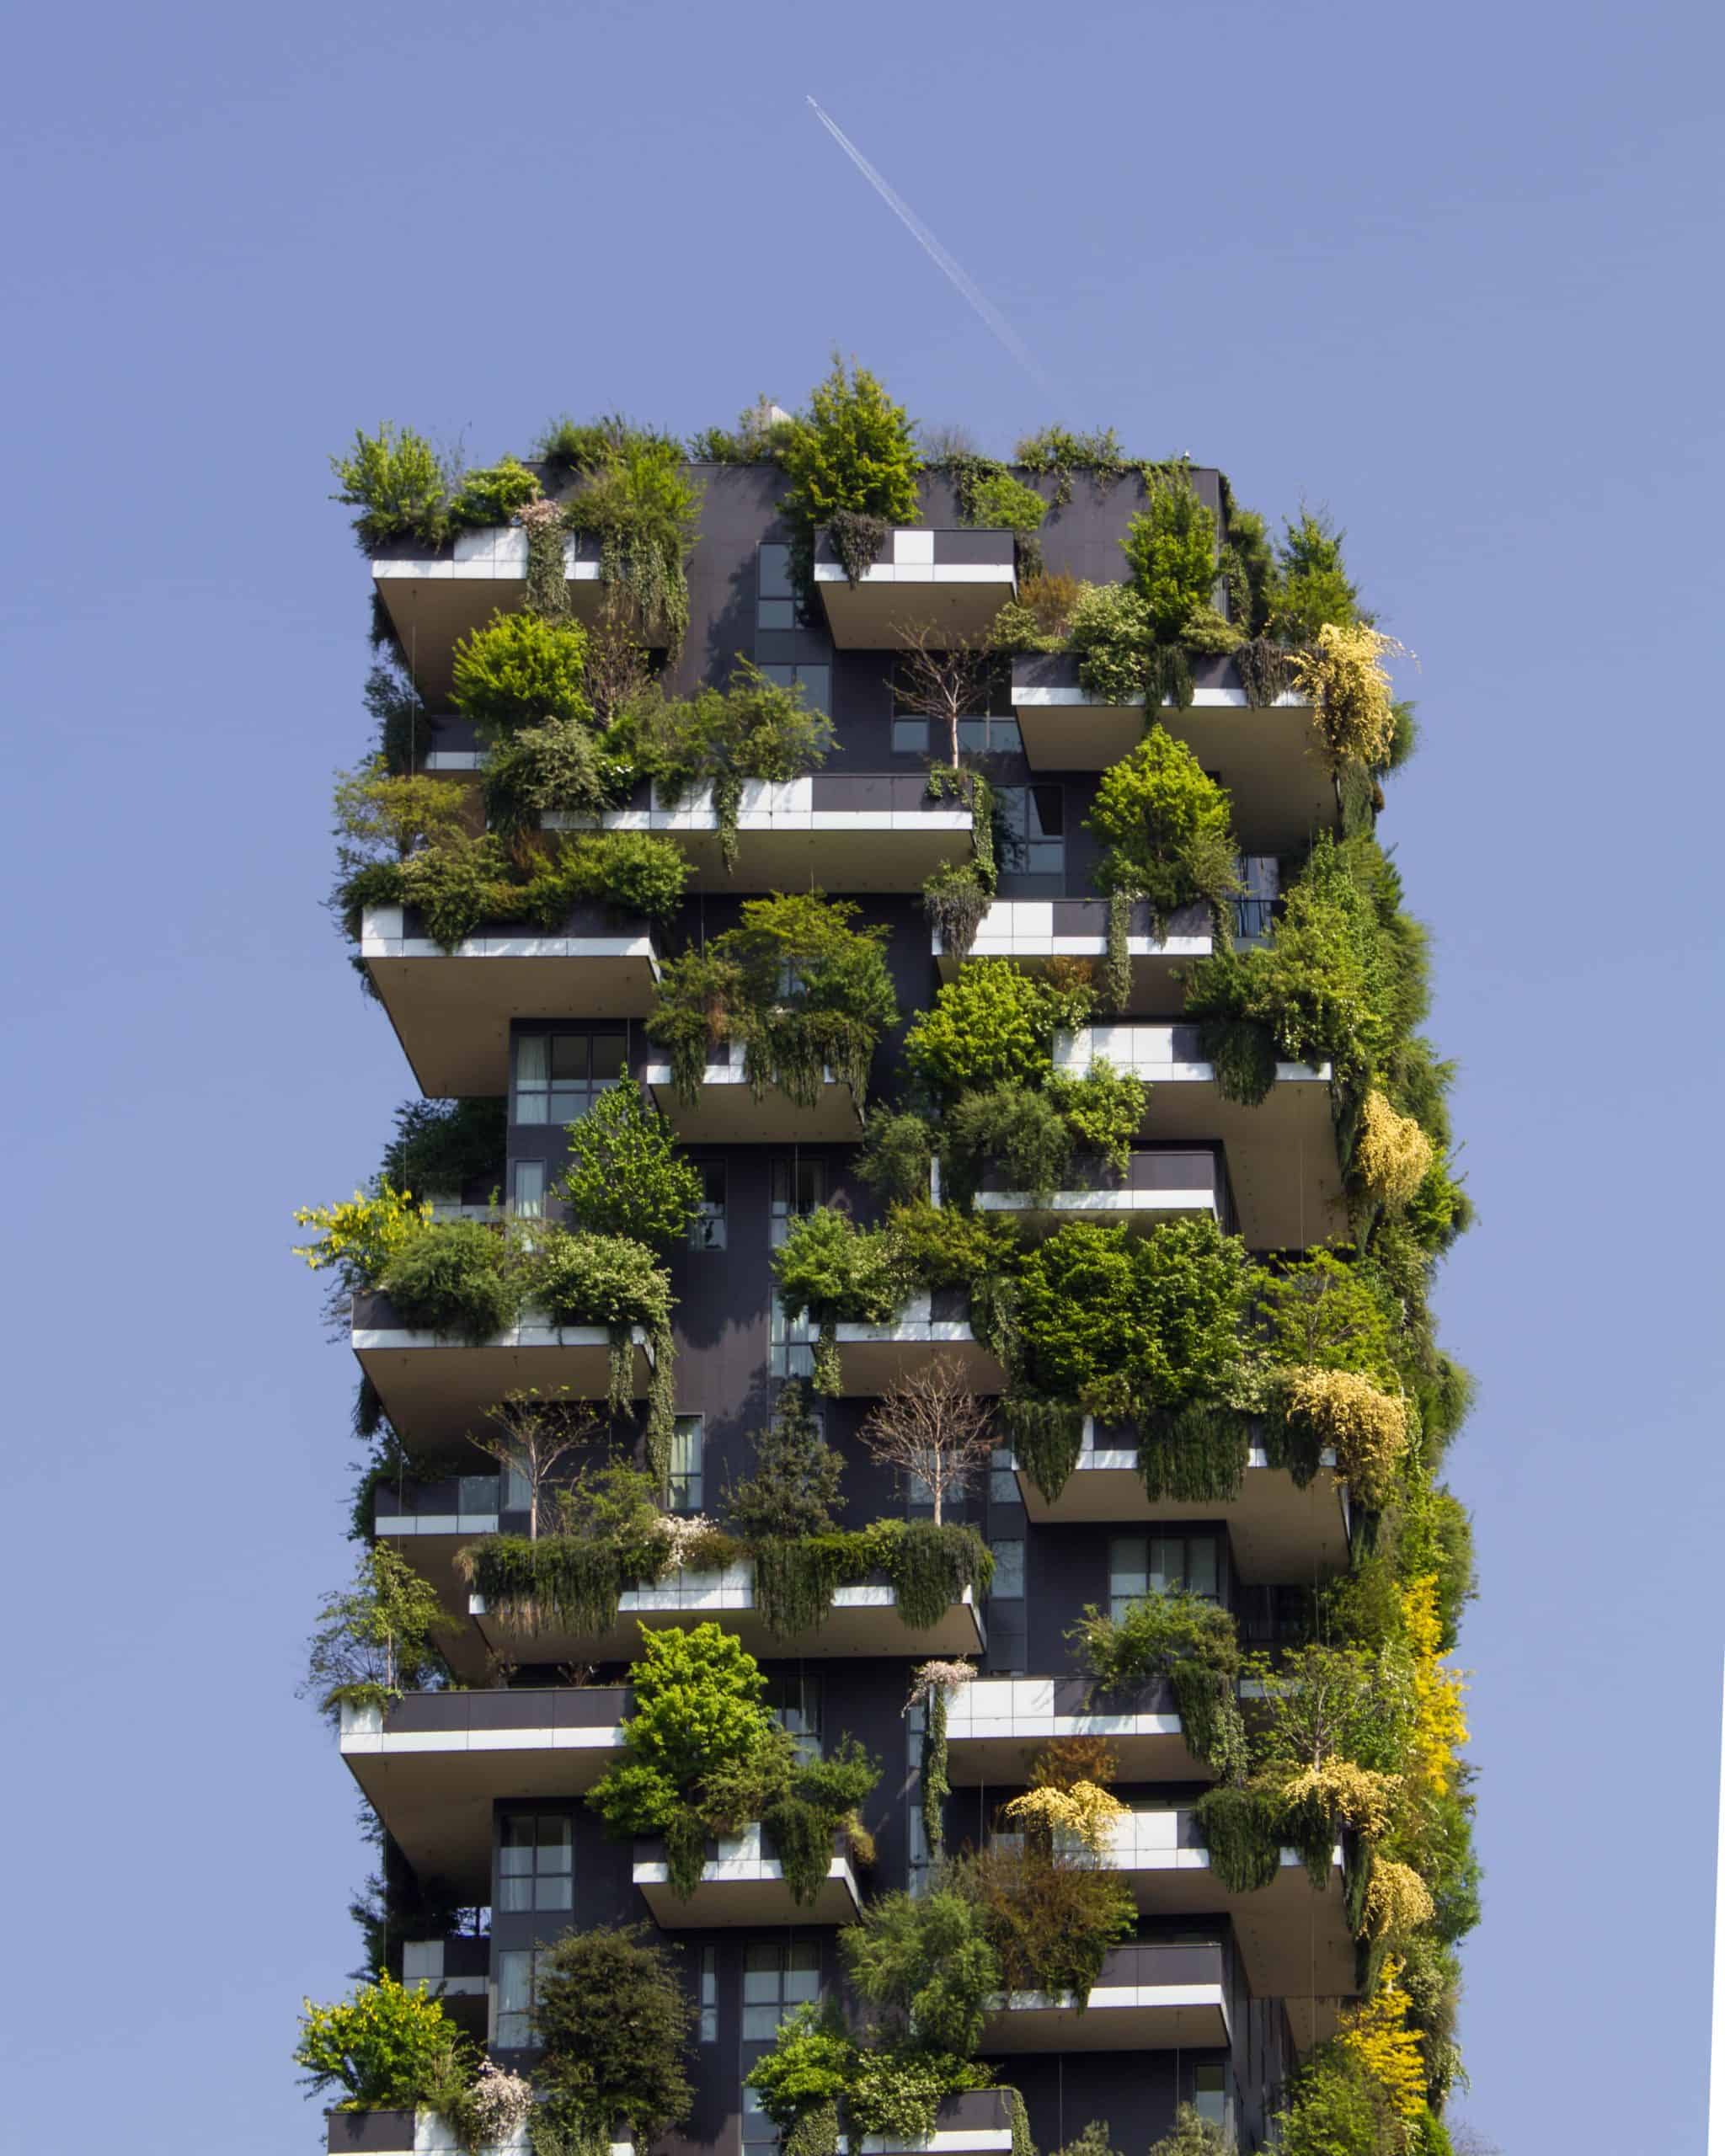 ekologické bývanie - victor garcia 0NJ9urGXrIg unsplash scaled - Ekologické bývanie &#8211; časť 1.